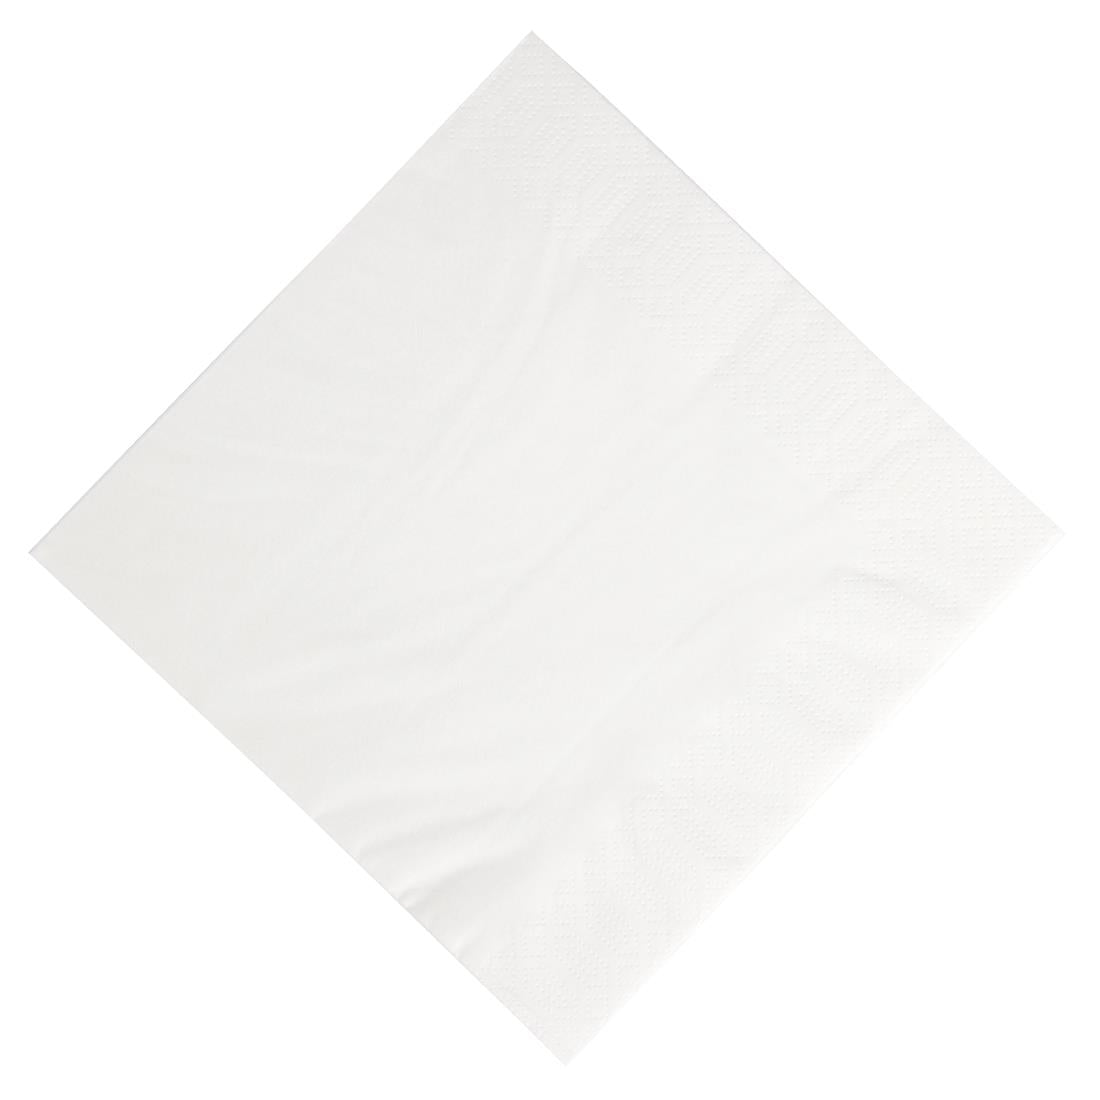 Duni Dinner Napkin White 40x40cm 3ply 1/4 Fold (Pack of 1000)